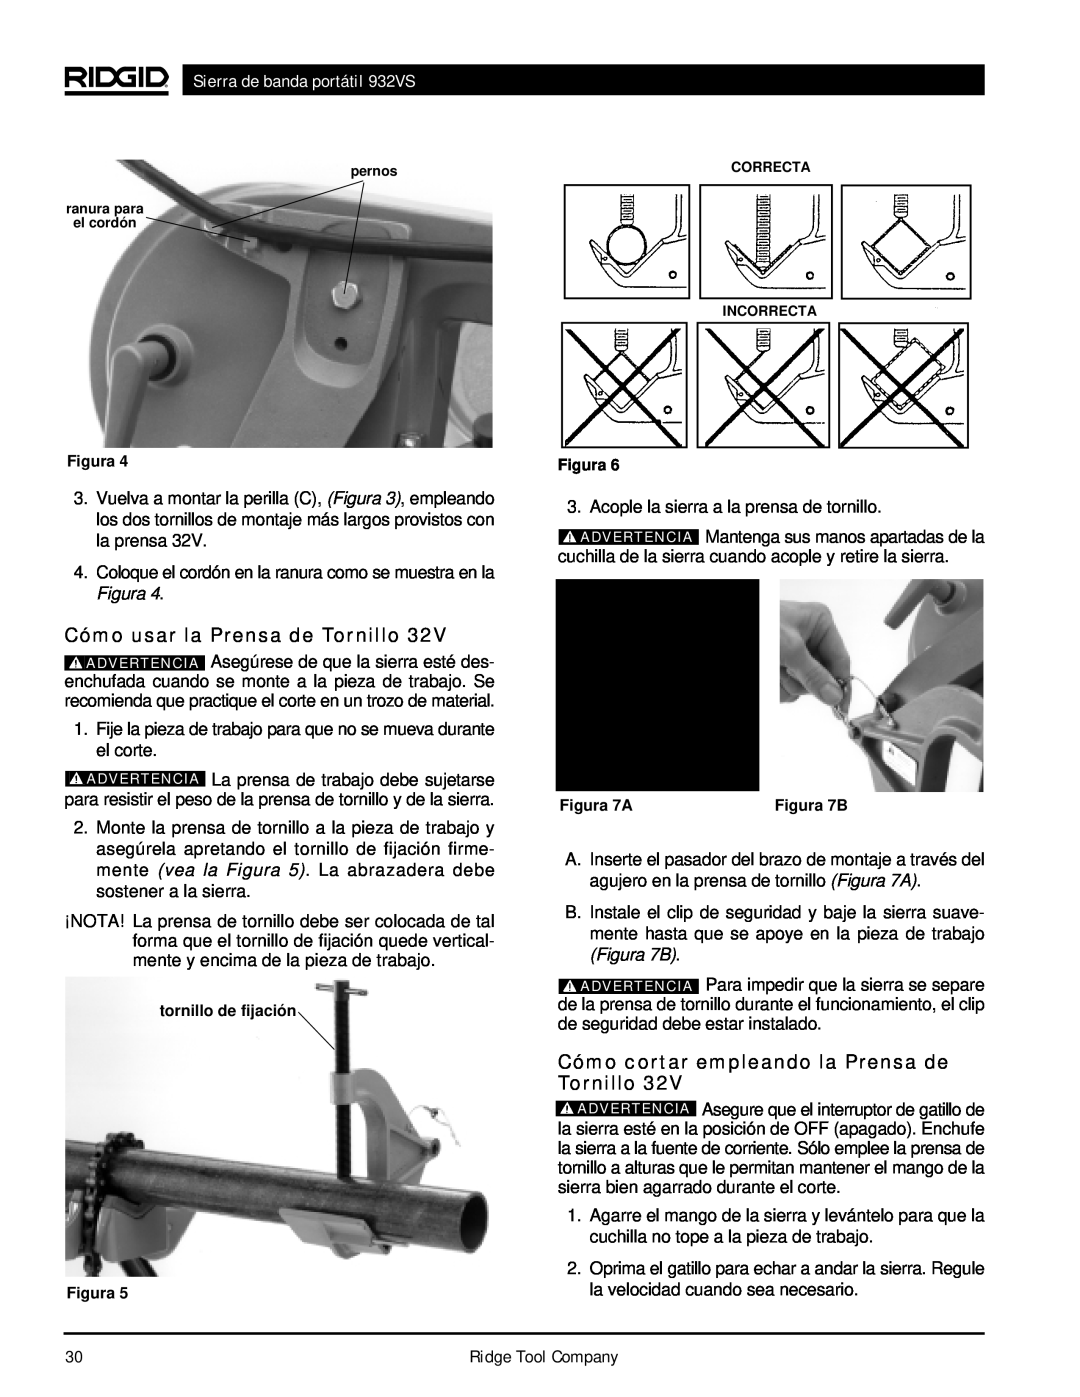 RIDGID Cómo usar la Prensa de Tornillo, Cómo cortar empleando la Prensa de Tornillo, Sierra de banda portátil 932VS 